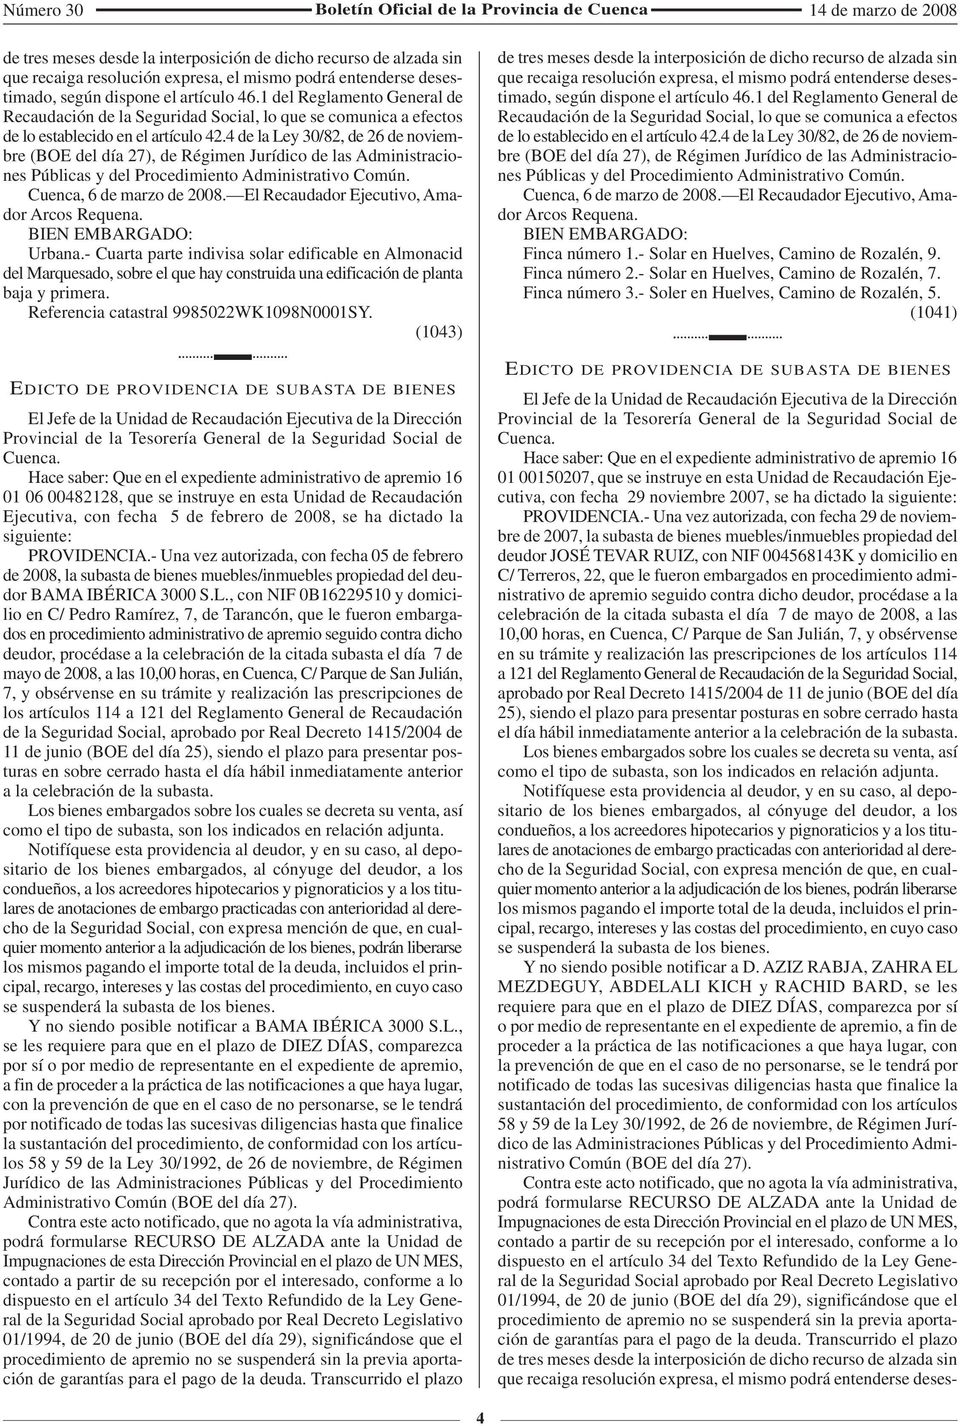 4 de la Ley 30/82, de 26 de noviembre (BOE del día 27), de Régimen Jurídico de las Administraciones Públicas y del Procedimiento Administrativo Común. Cuenca, 6 de marzo de 2008.